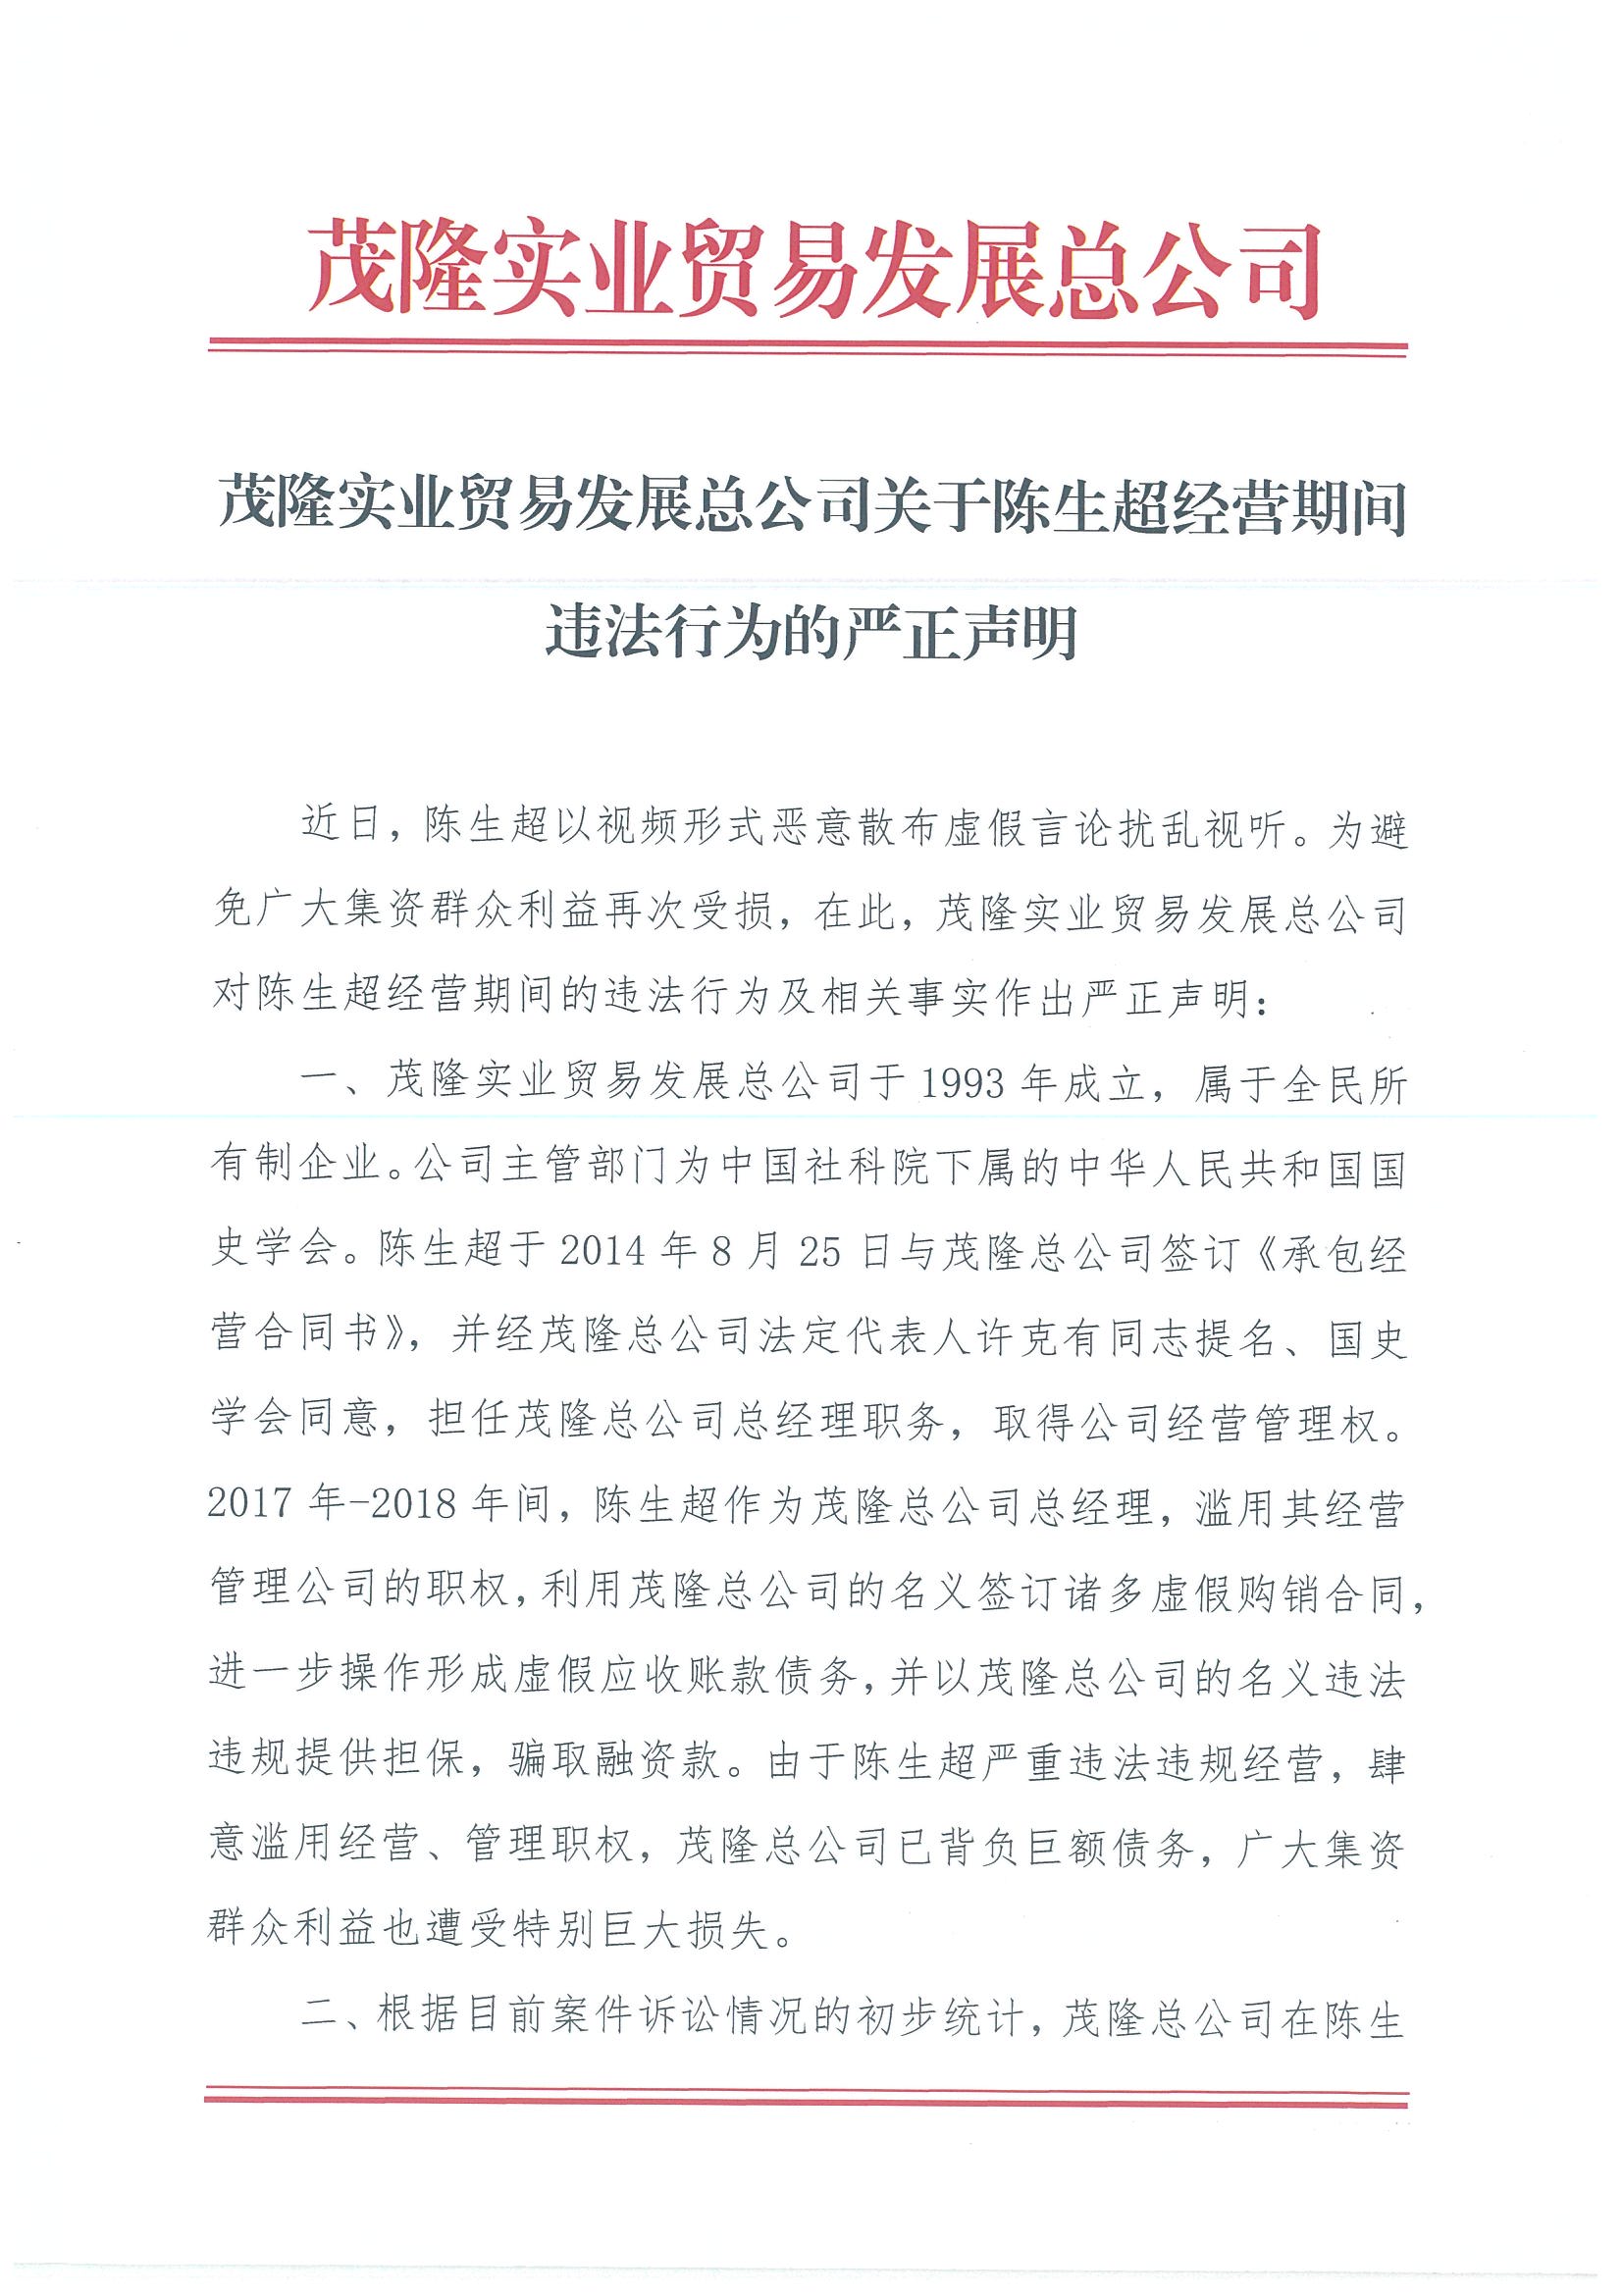 茂隆实业贸易发展总公司关于陈生超经营期间违法行为的严正声明(图1)